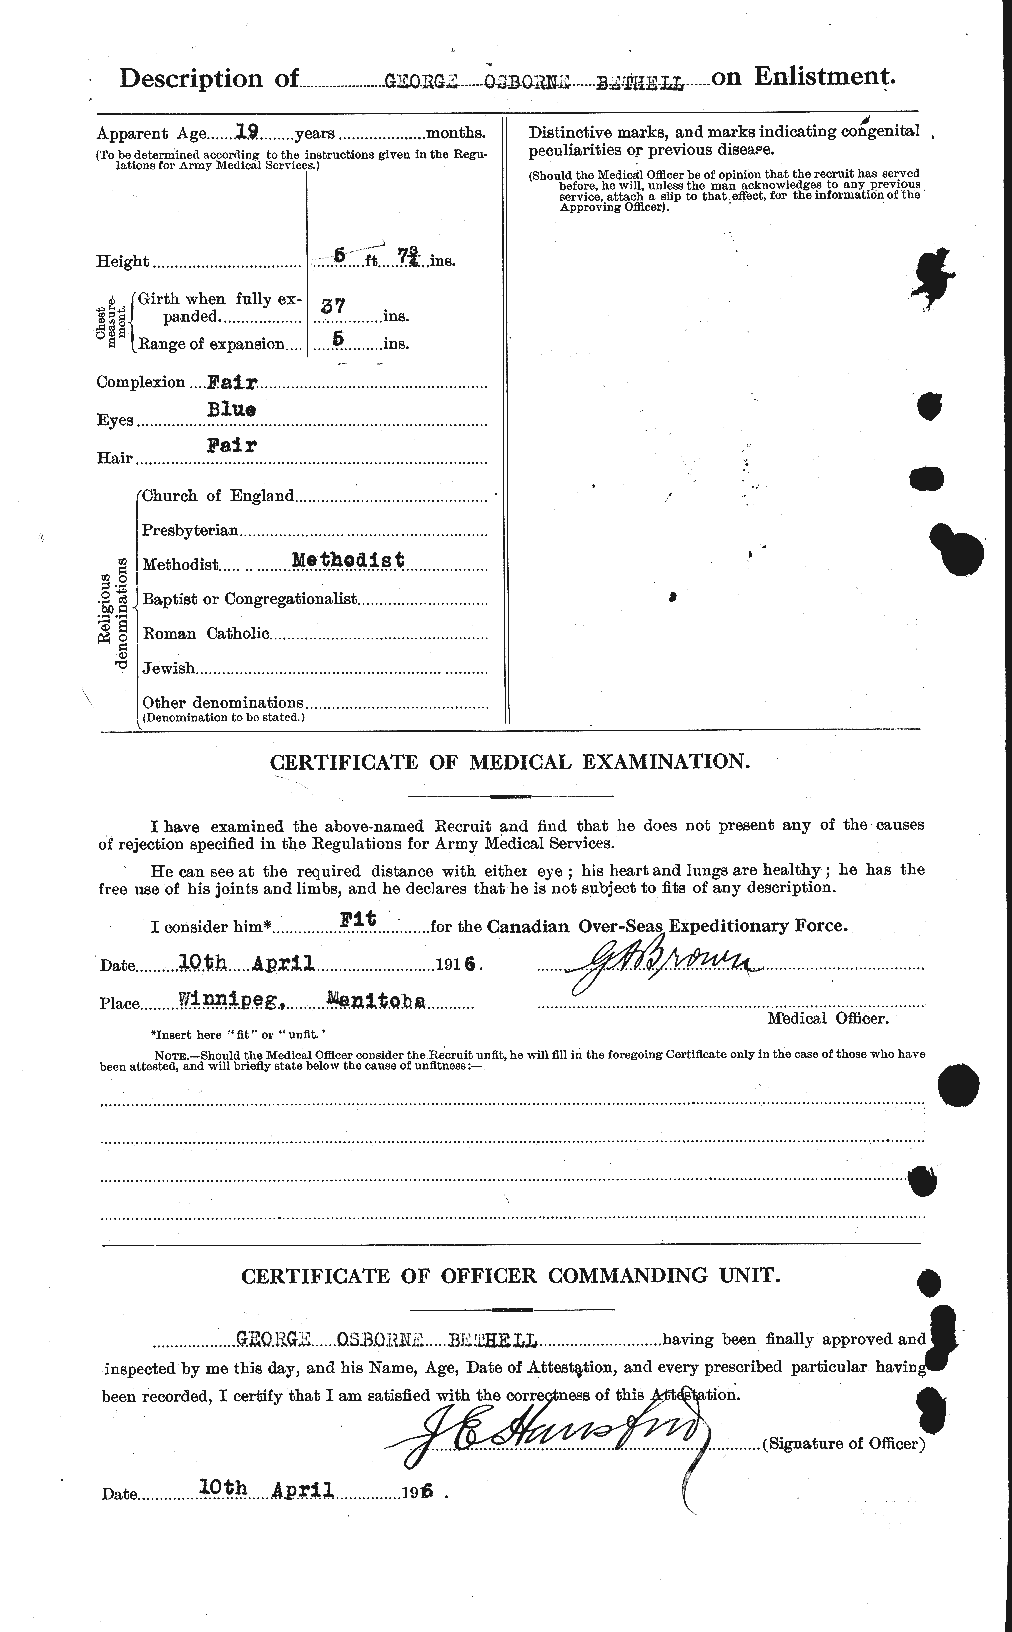 Dossiers du Personnel de la Première Guerre mondiale - CEC 236987b